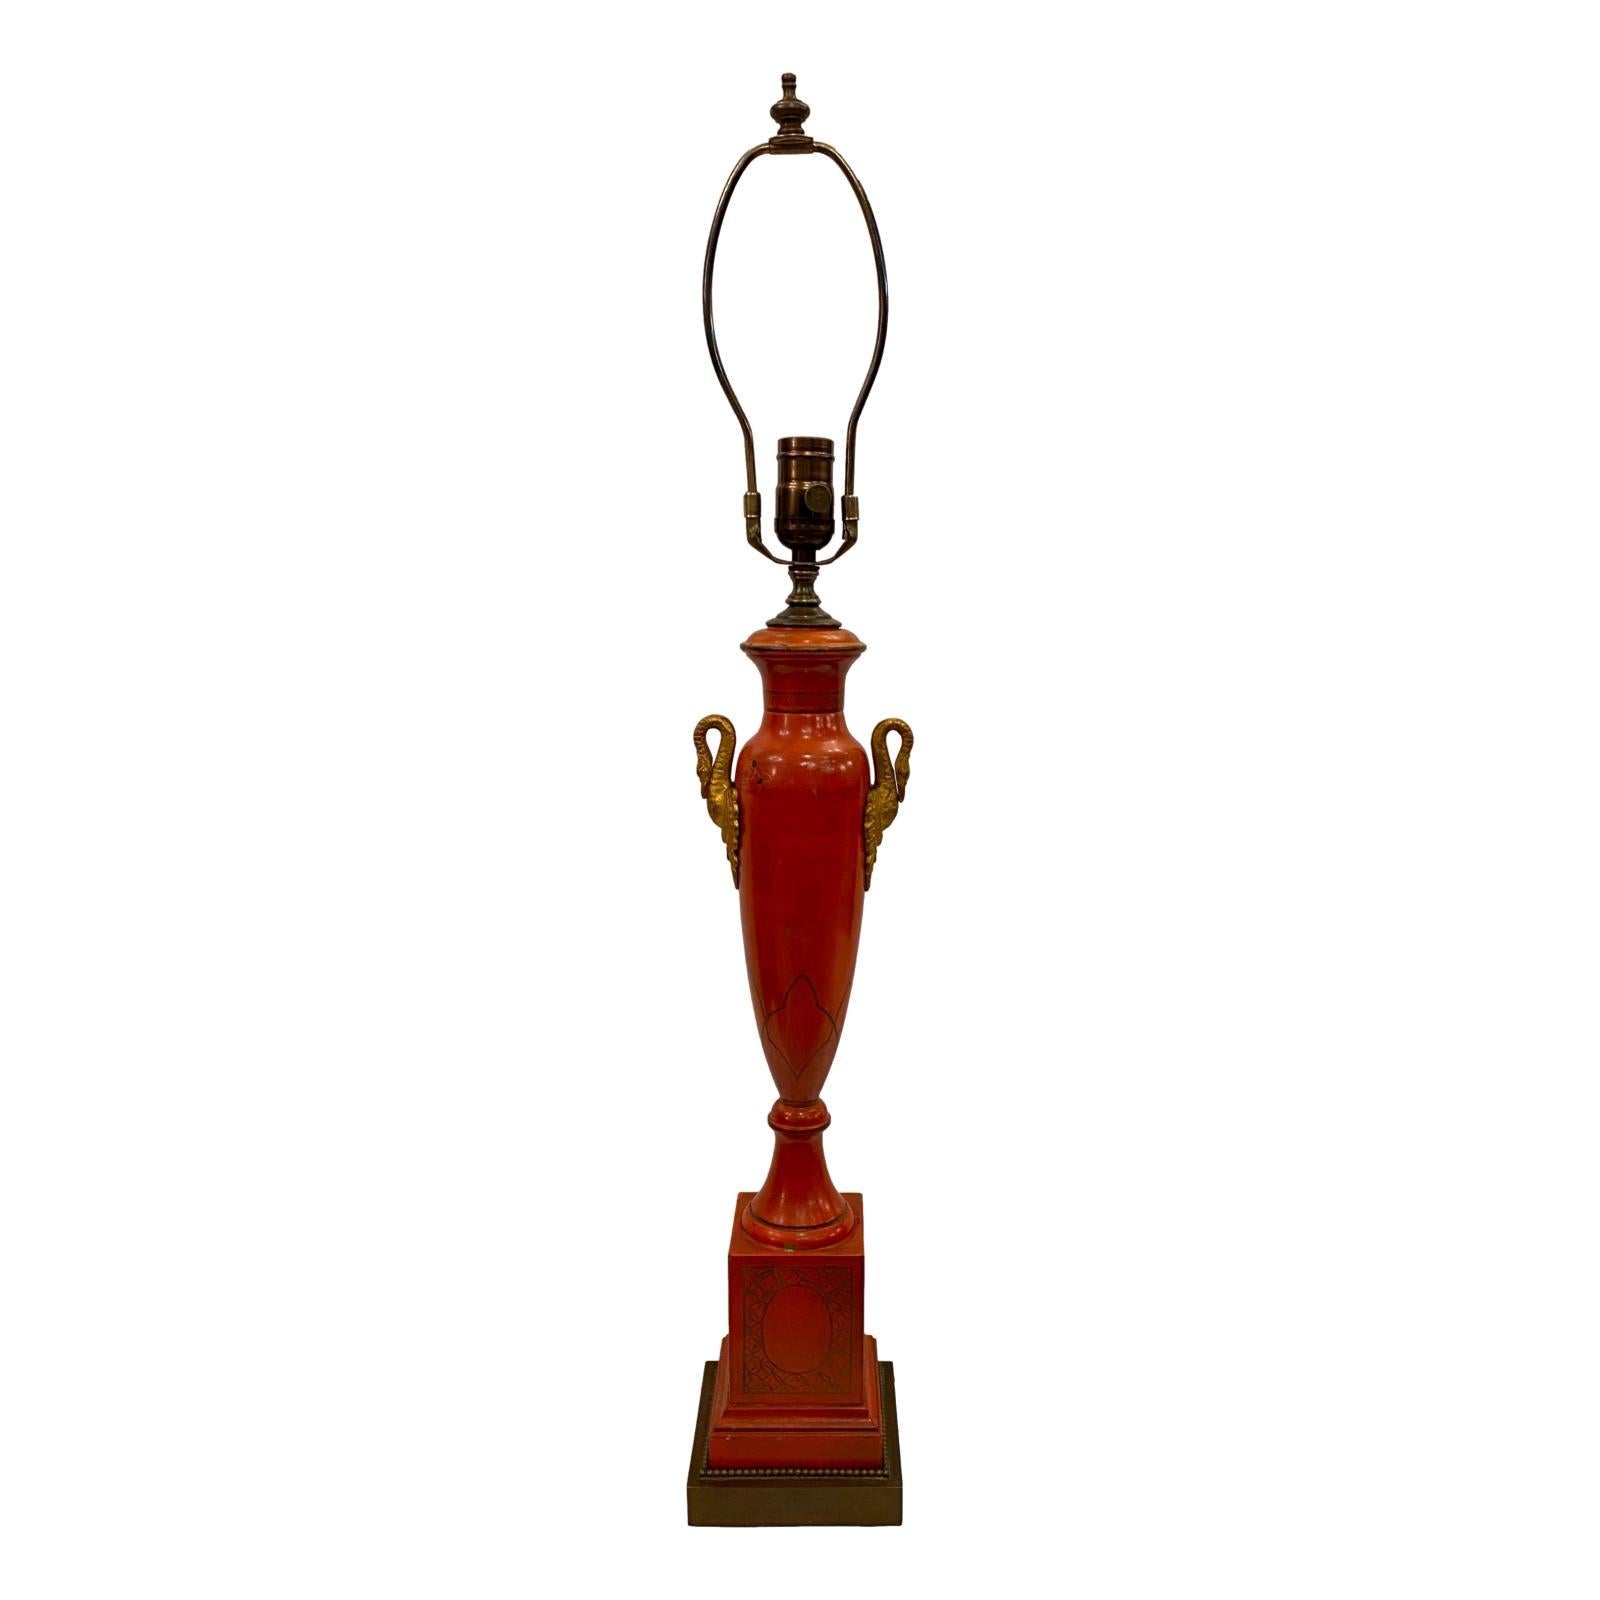 Une seule lampe de table française de style Empire, datant des années 1920, avec des bras de cygne en bronze doré.

Mesures :
Hauteur du corps : 23
Hauteur jusqu'au support de l'abat-jour : 32